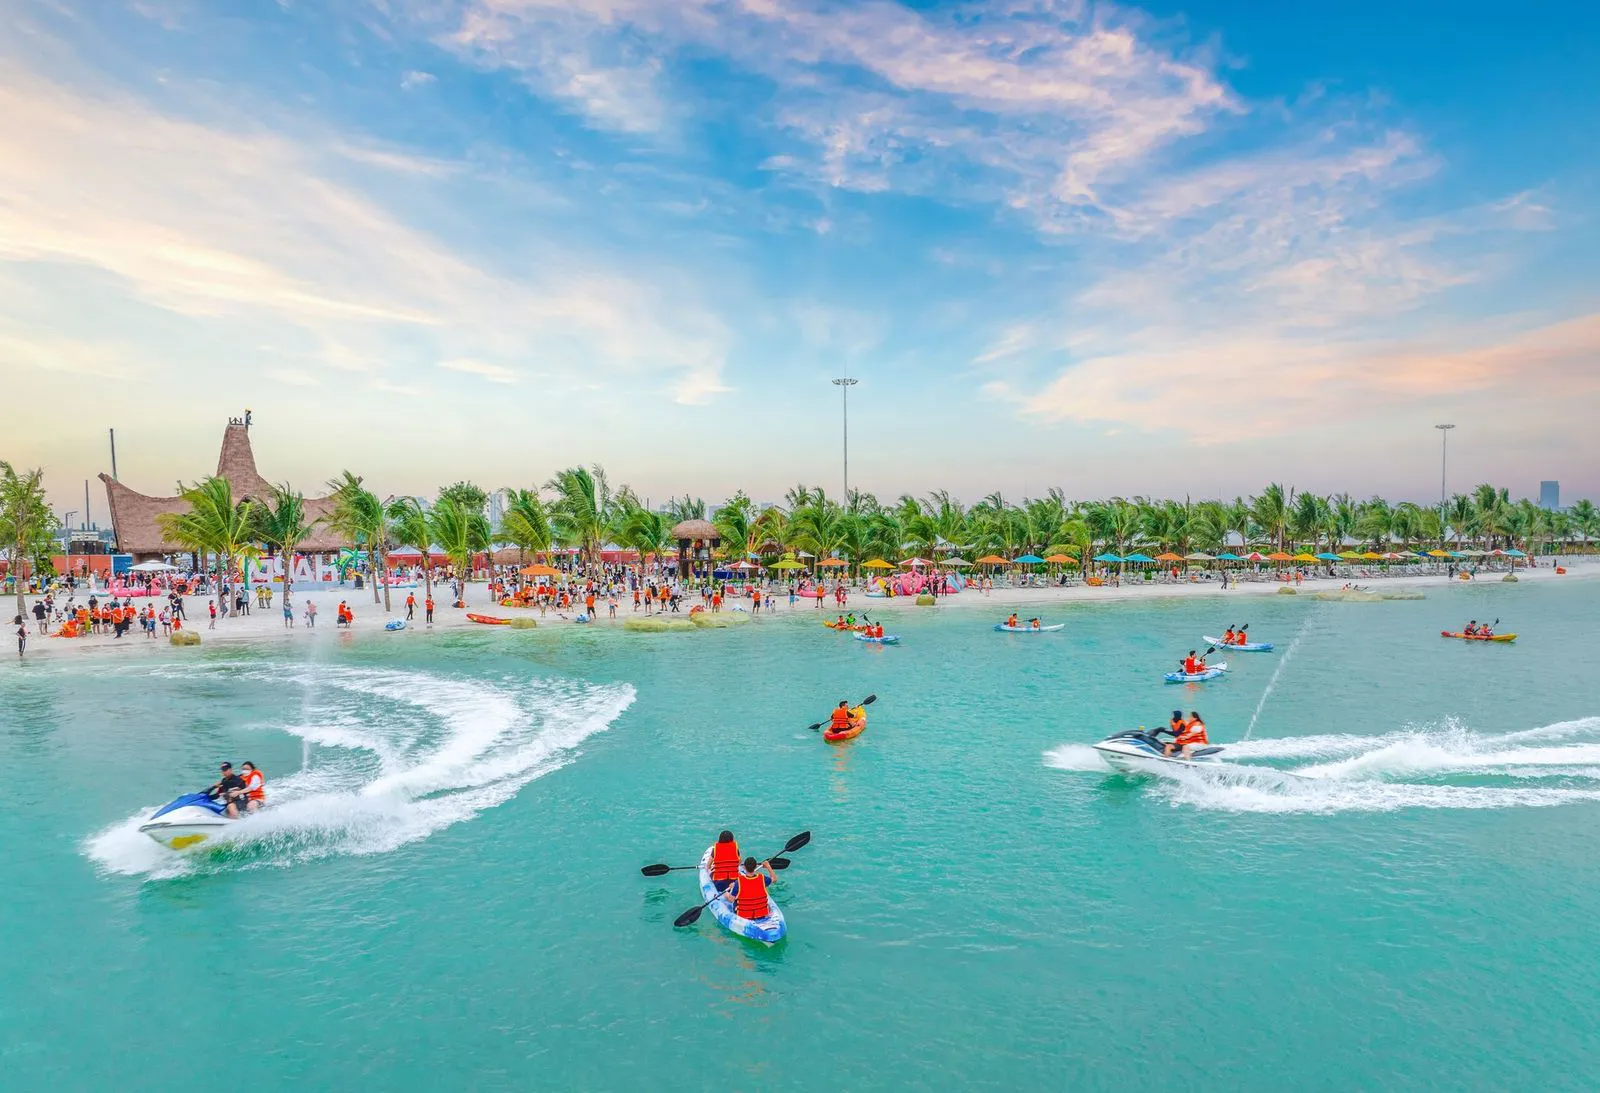 Cộng hưởng với chất sống nghỉ dưỡng biển tại thành phố điểm đến Ocean City, Mega Grand World Hà Nội sẽ trở thành một trung tâm giải trí đẳng cấp mới của du lịch Thủ đô.